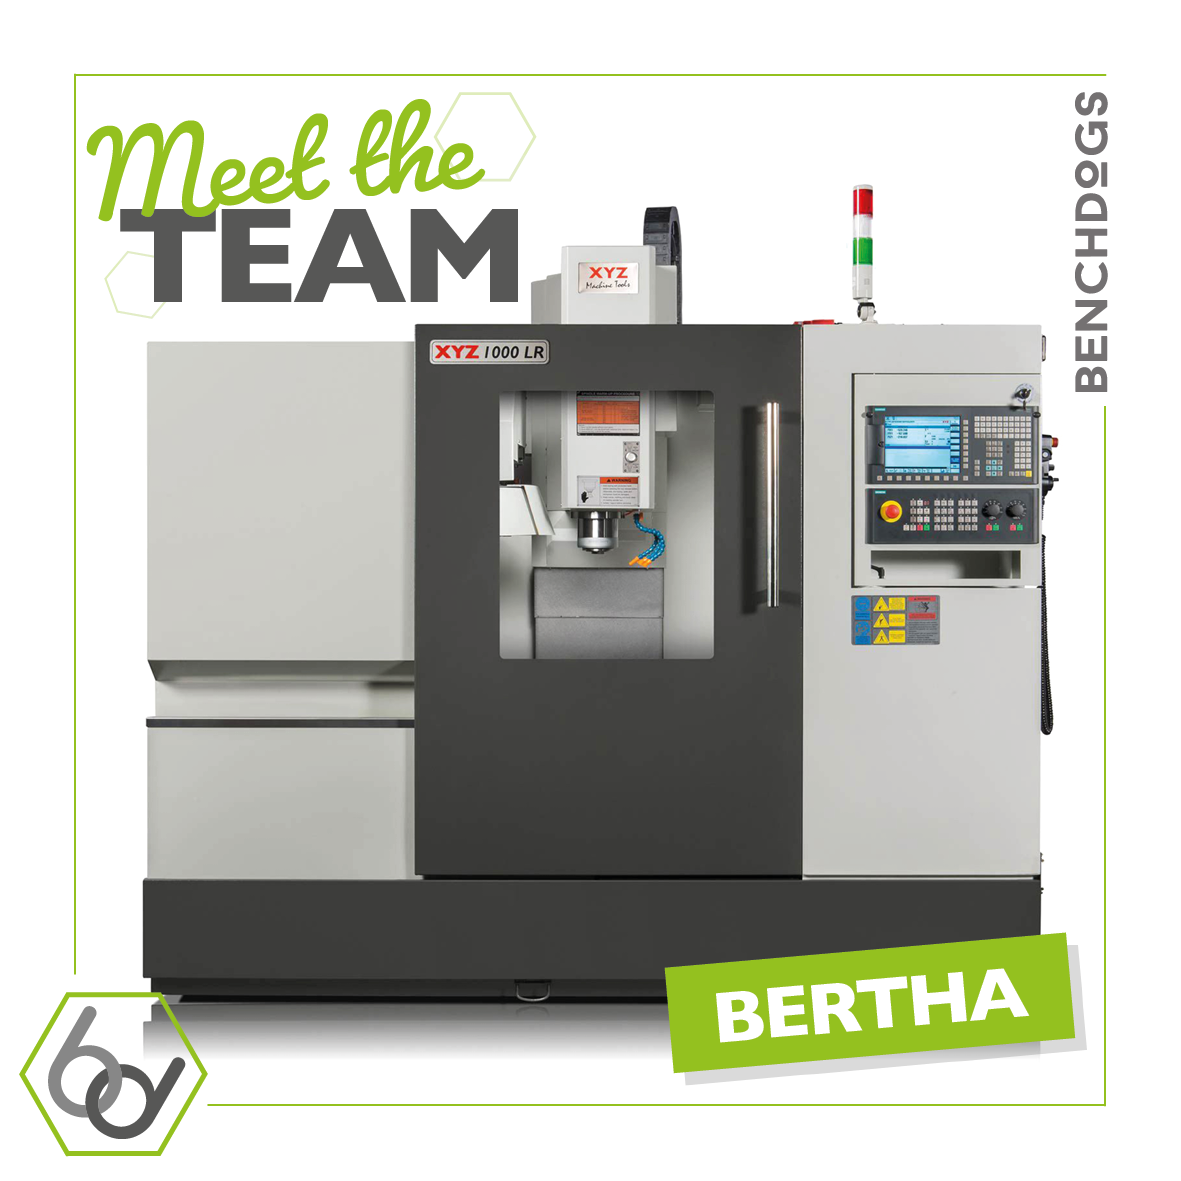 Our Machines - Bertha